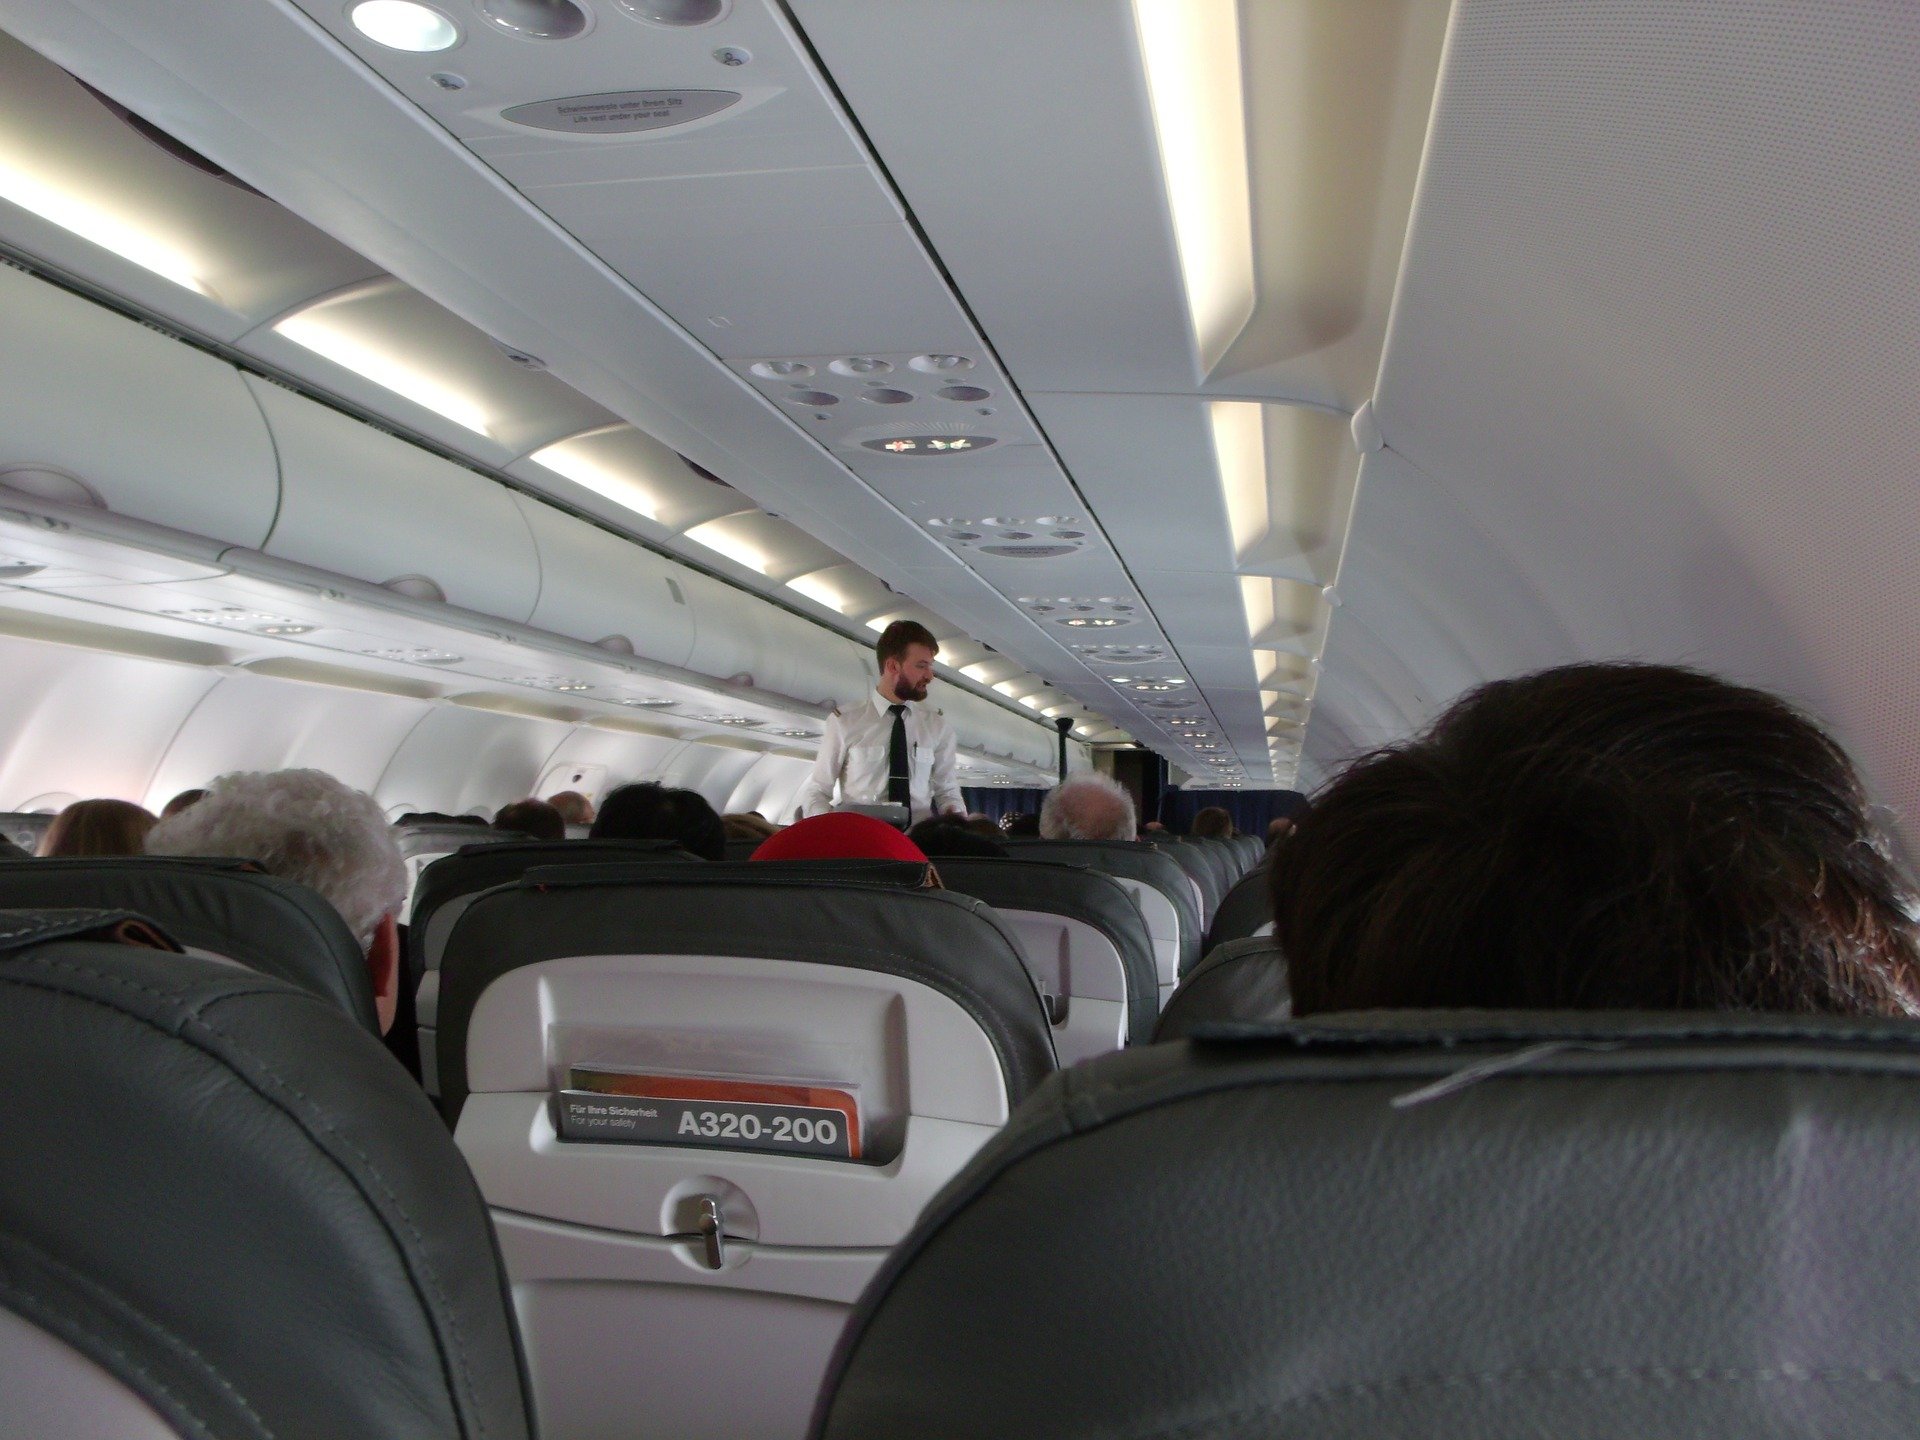 Im Flugzeug nach Kalifornien hatte die Frau keine Ahnung, wie sie das Problem lösen sollte, also beschloss sie, sich an eine Flugbegleiterin zu wenden | Quelle: Pexel